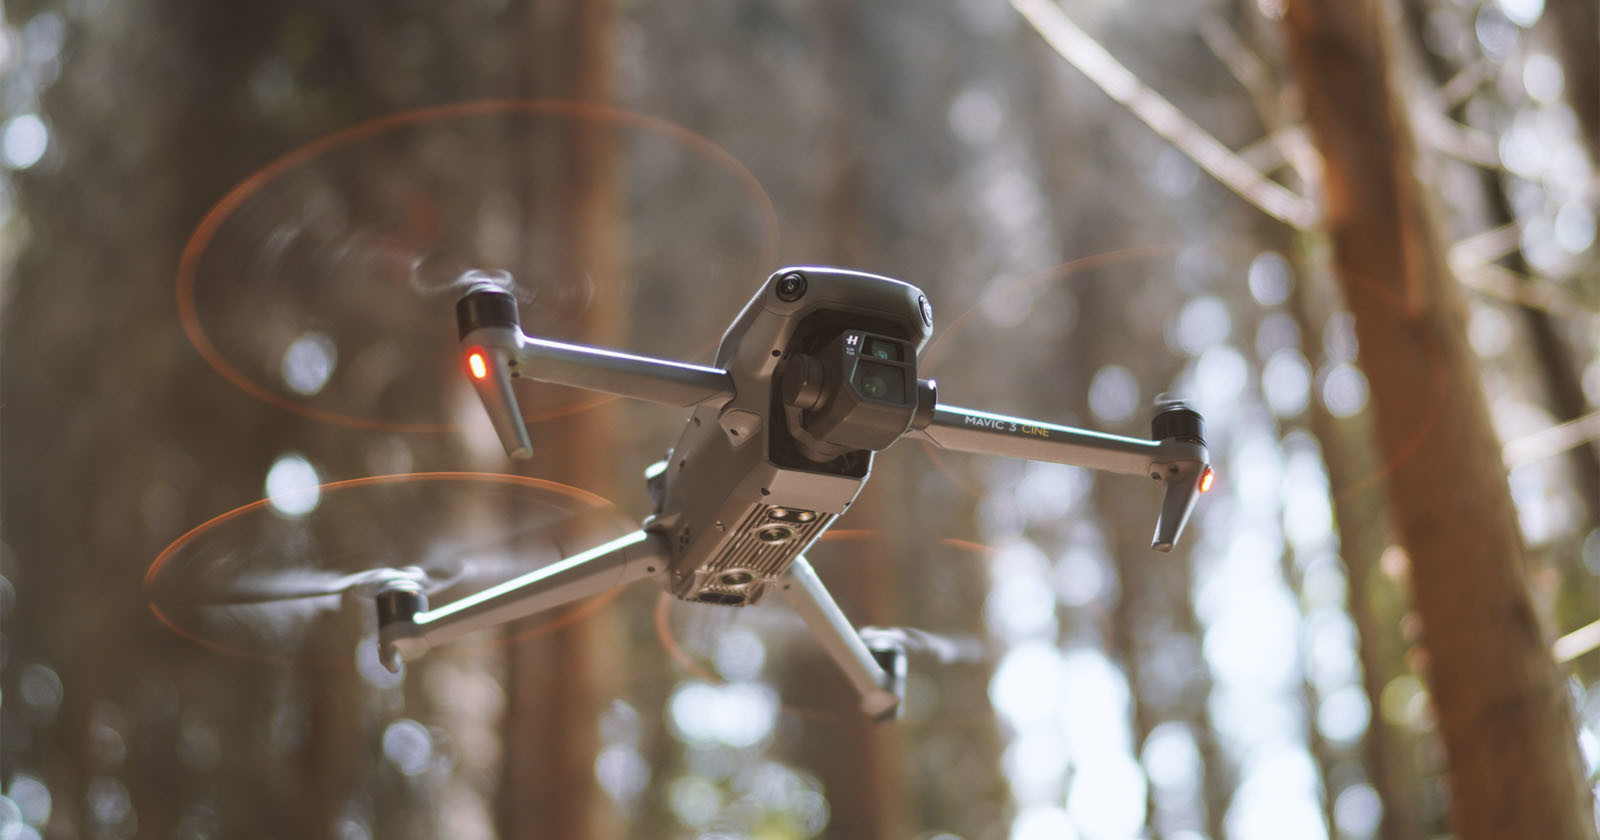  free online database helps pilots locate stolen drones 